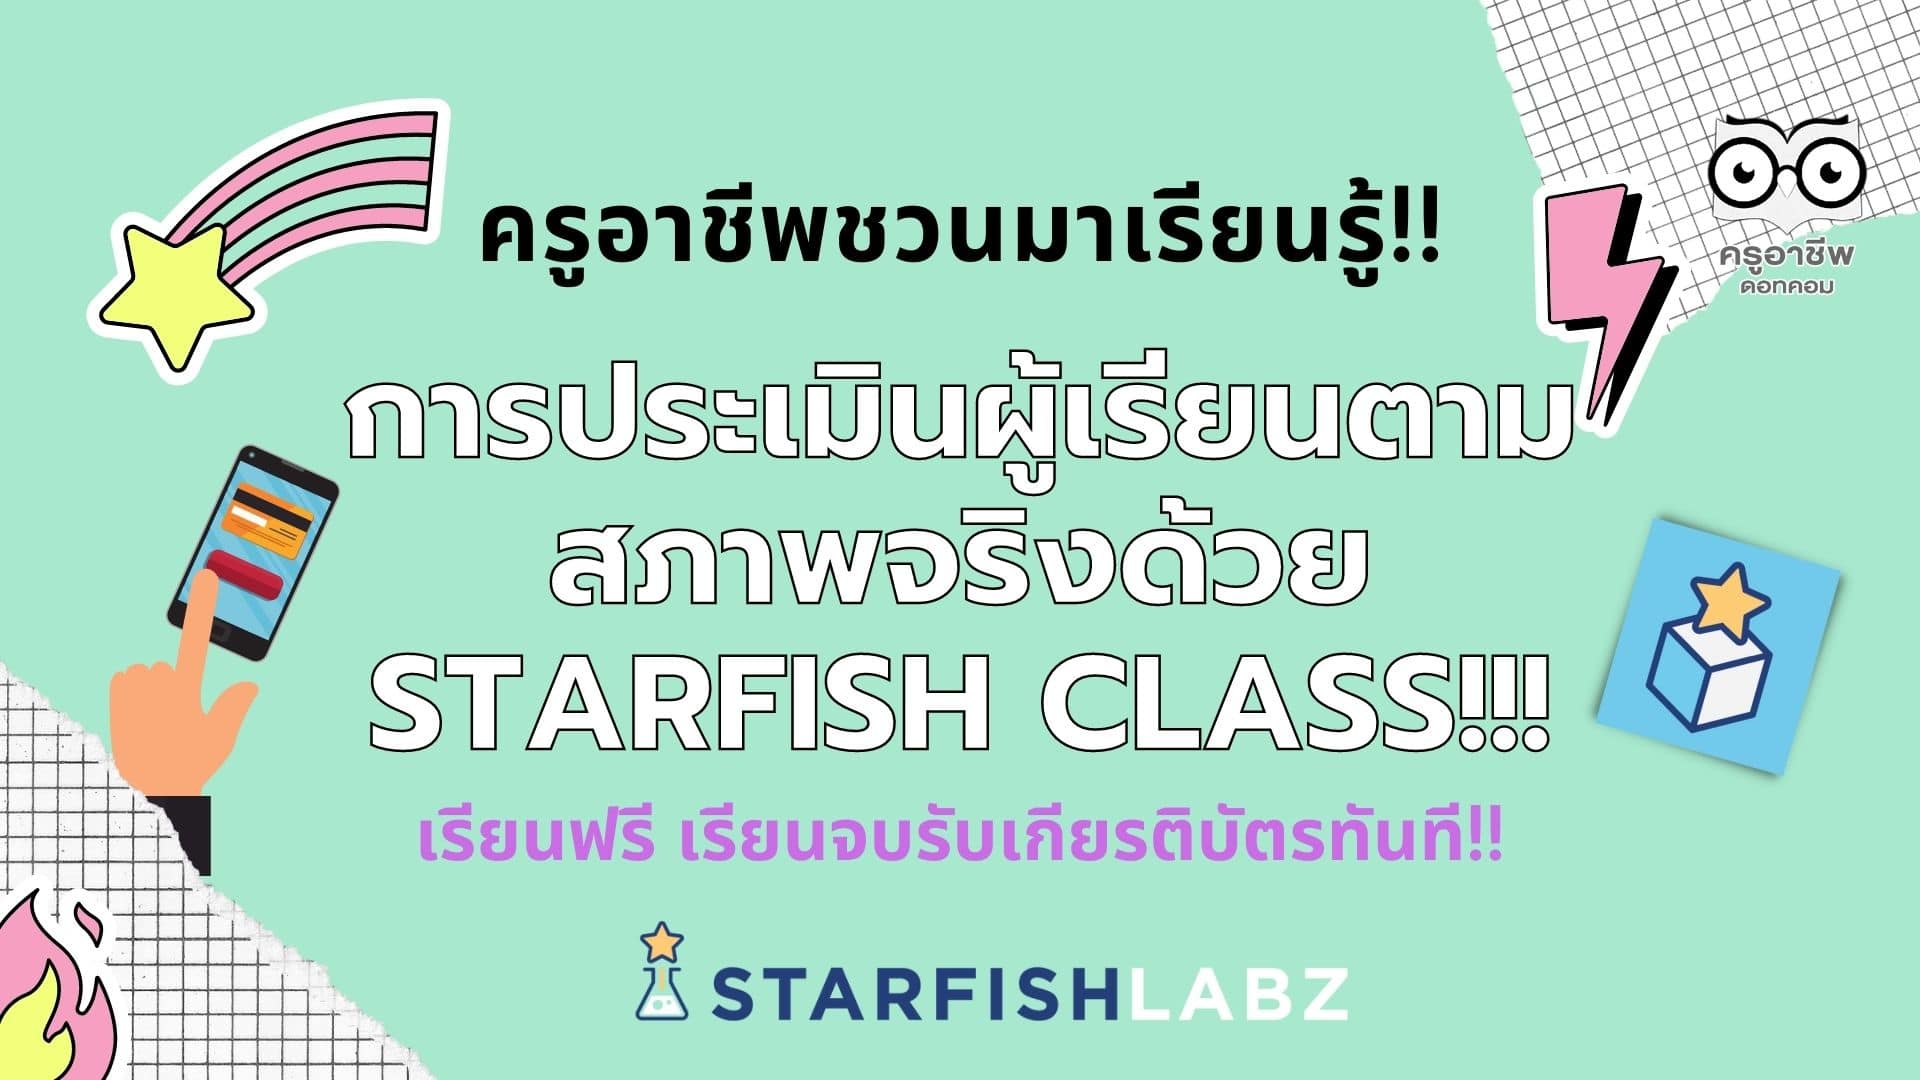 ครูอาชีพชวนมาเรียนรู้!! การประเมินผู้เรียนตามสภาพจริงด้วย Starfish Class เรียนฟรี เรียนจบรับเกียรติบัตร จากStarfish Labz